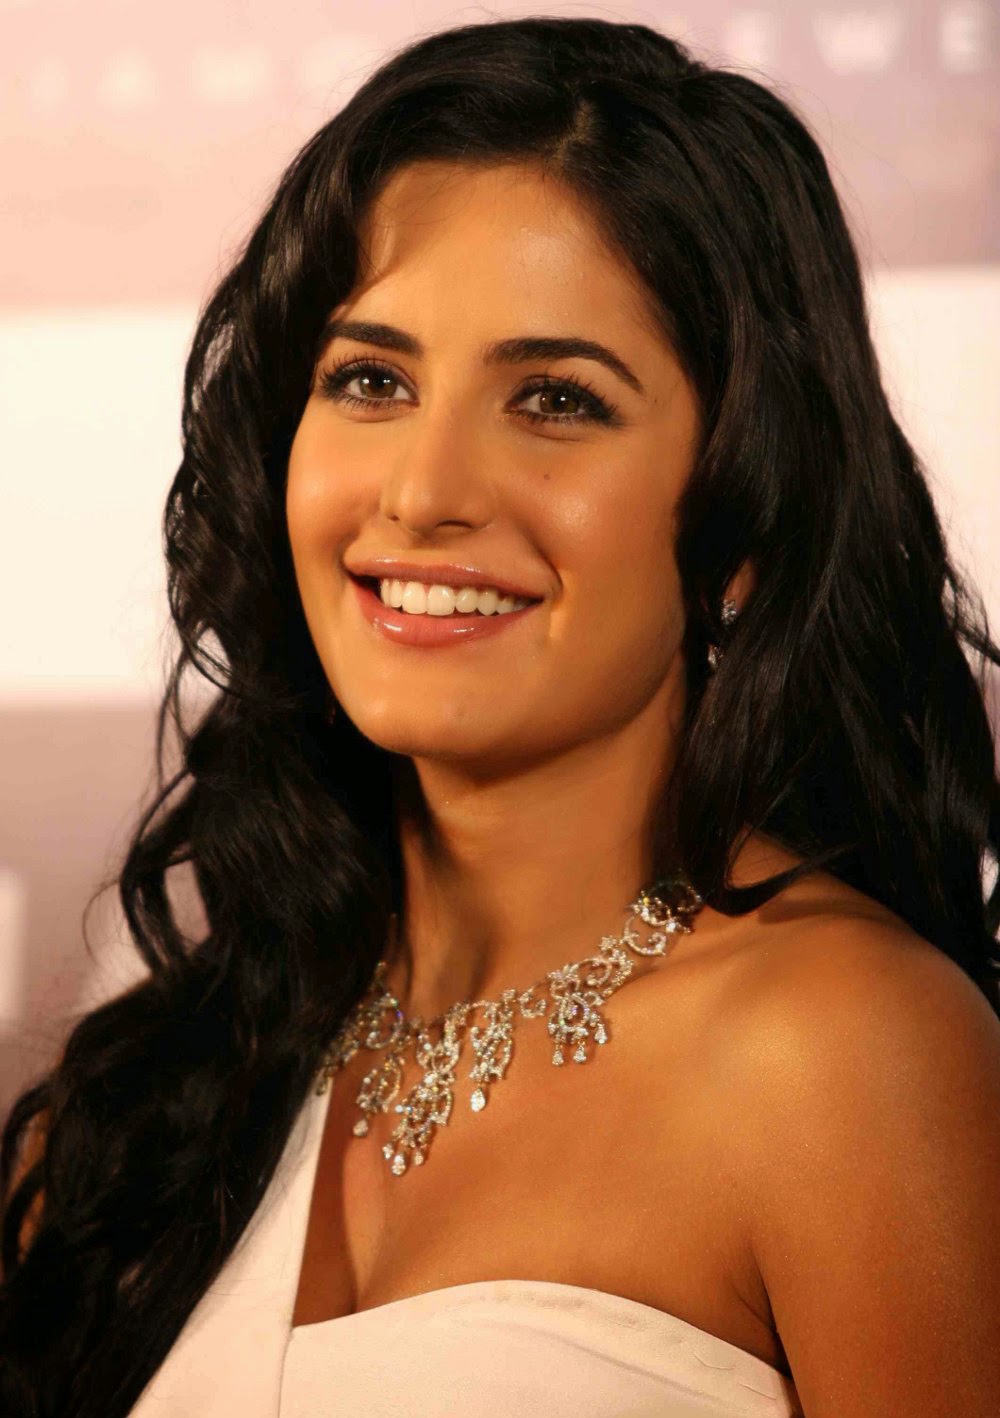 Top 10 Bollywood Actress